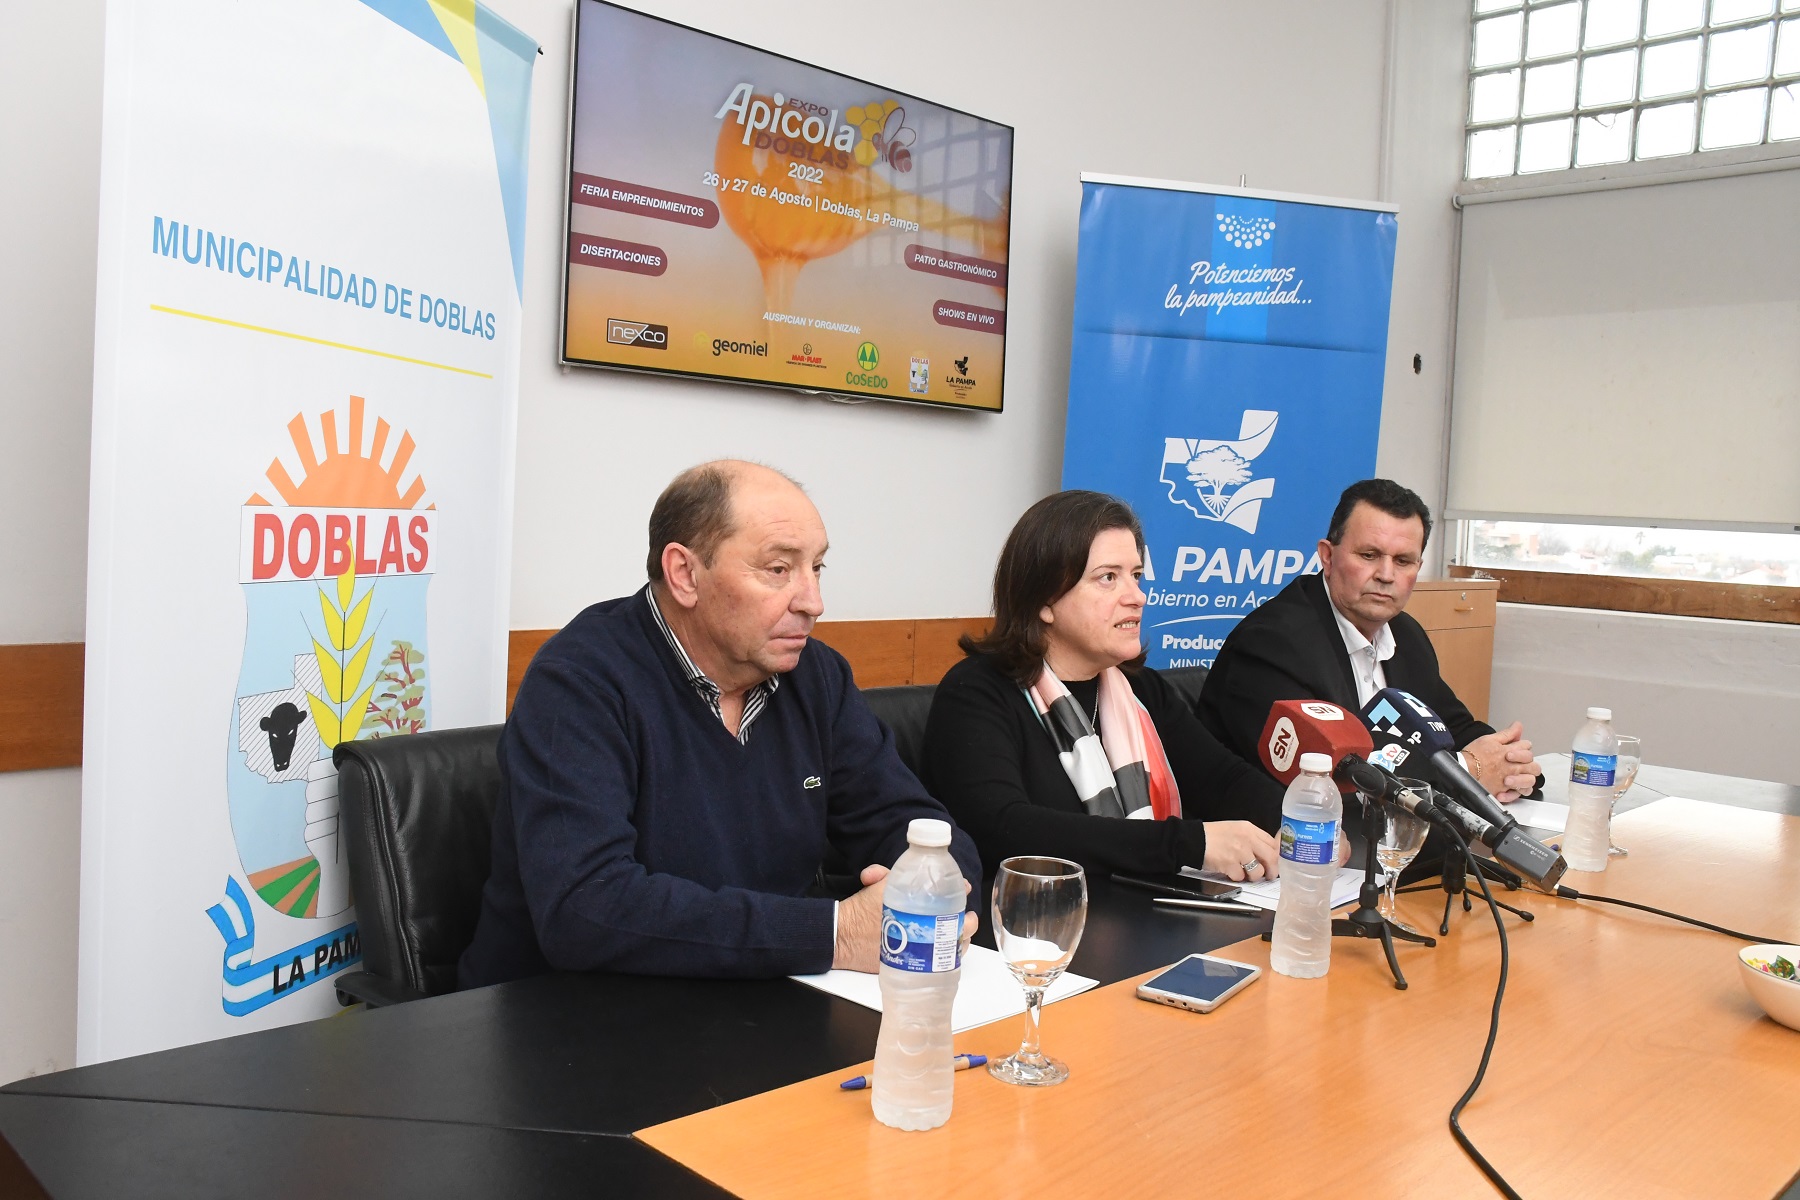 Provincia y municipio presentaron la 25° edición de la Expo Apícola Doblas